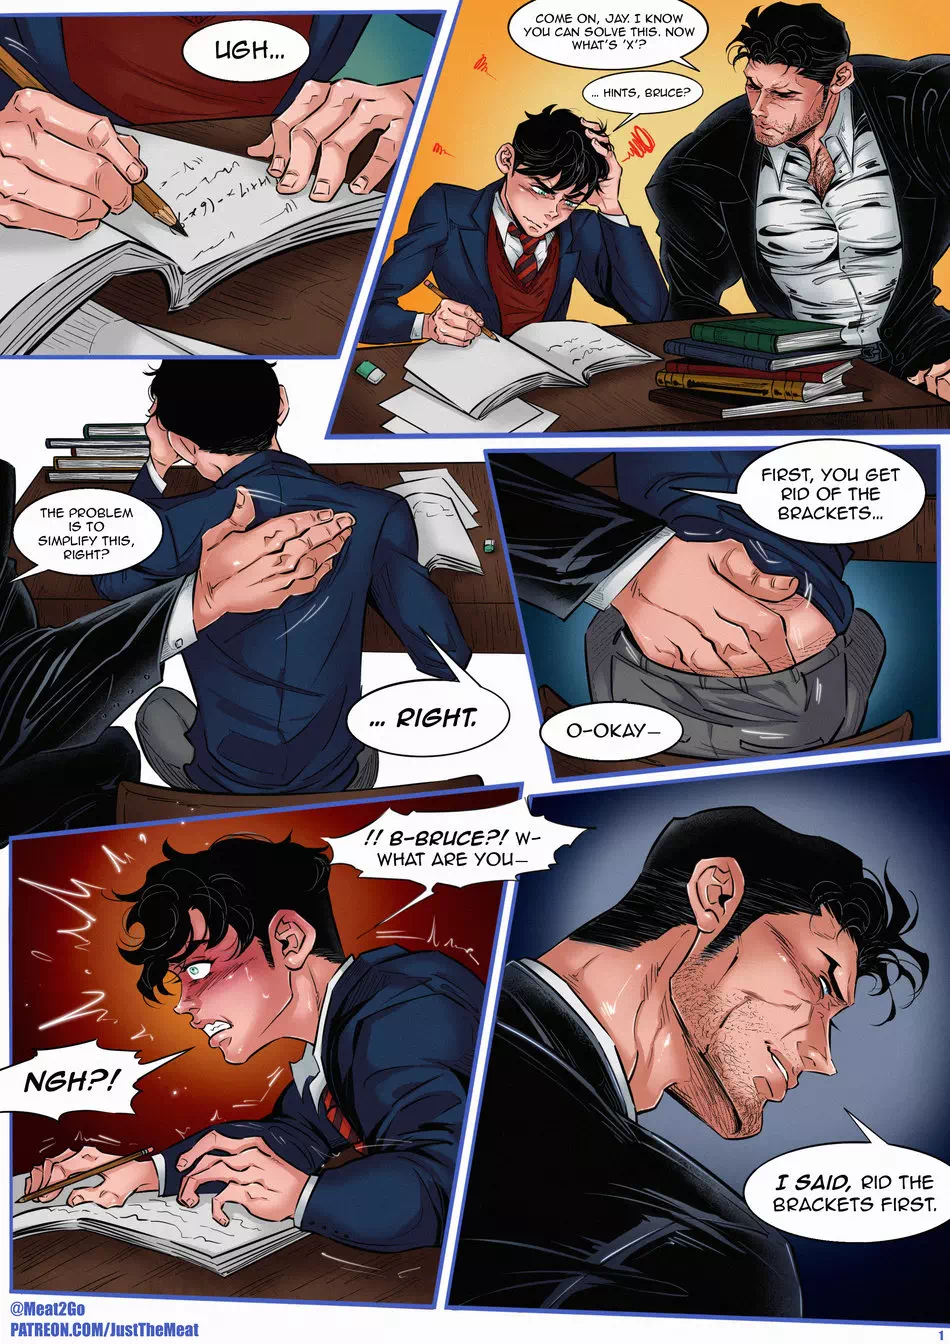 Yaoi porn comics Justice League – 11X+23. Pairing: Bruce & Jason Todd